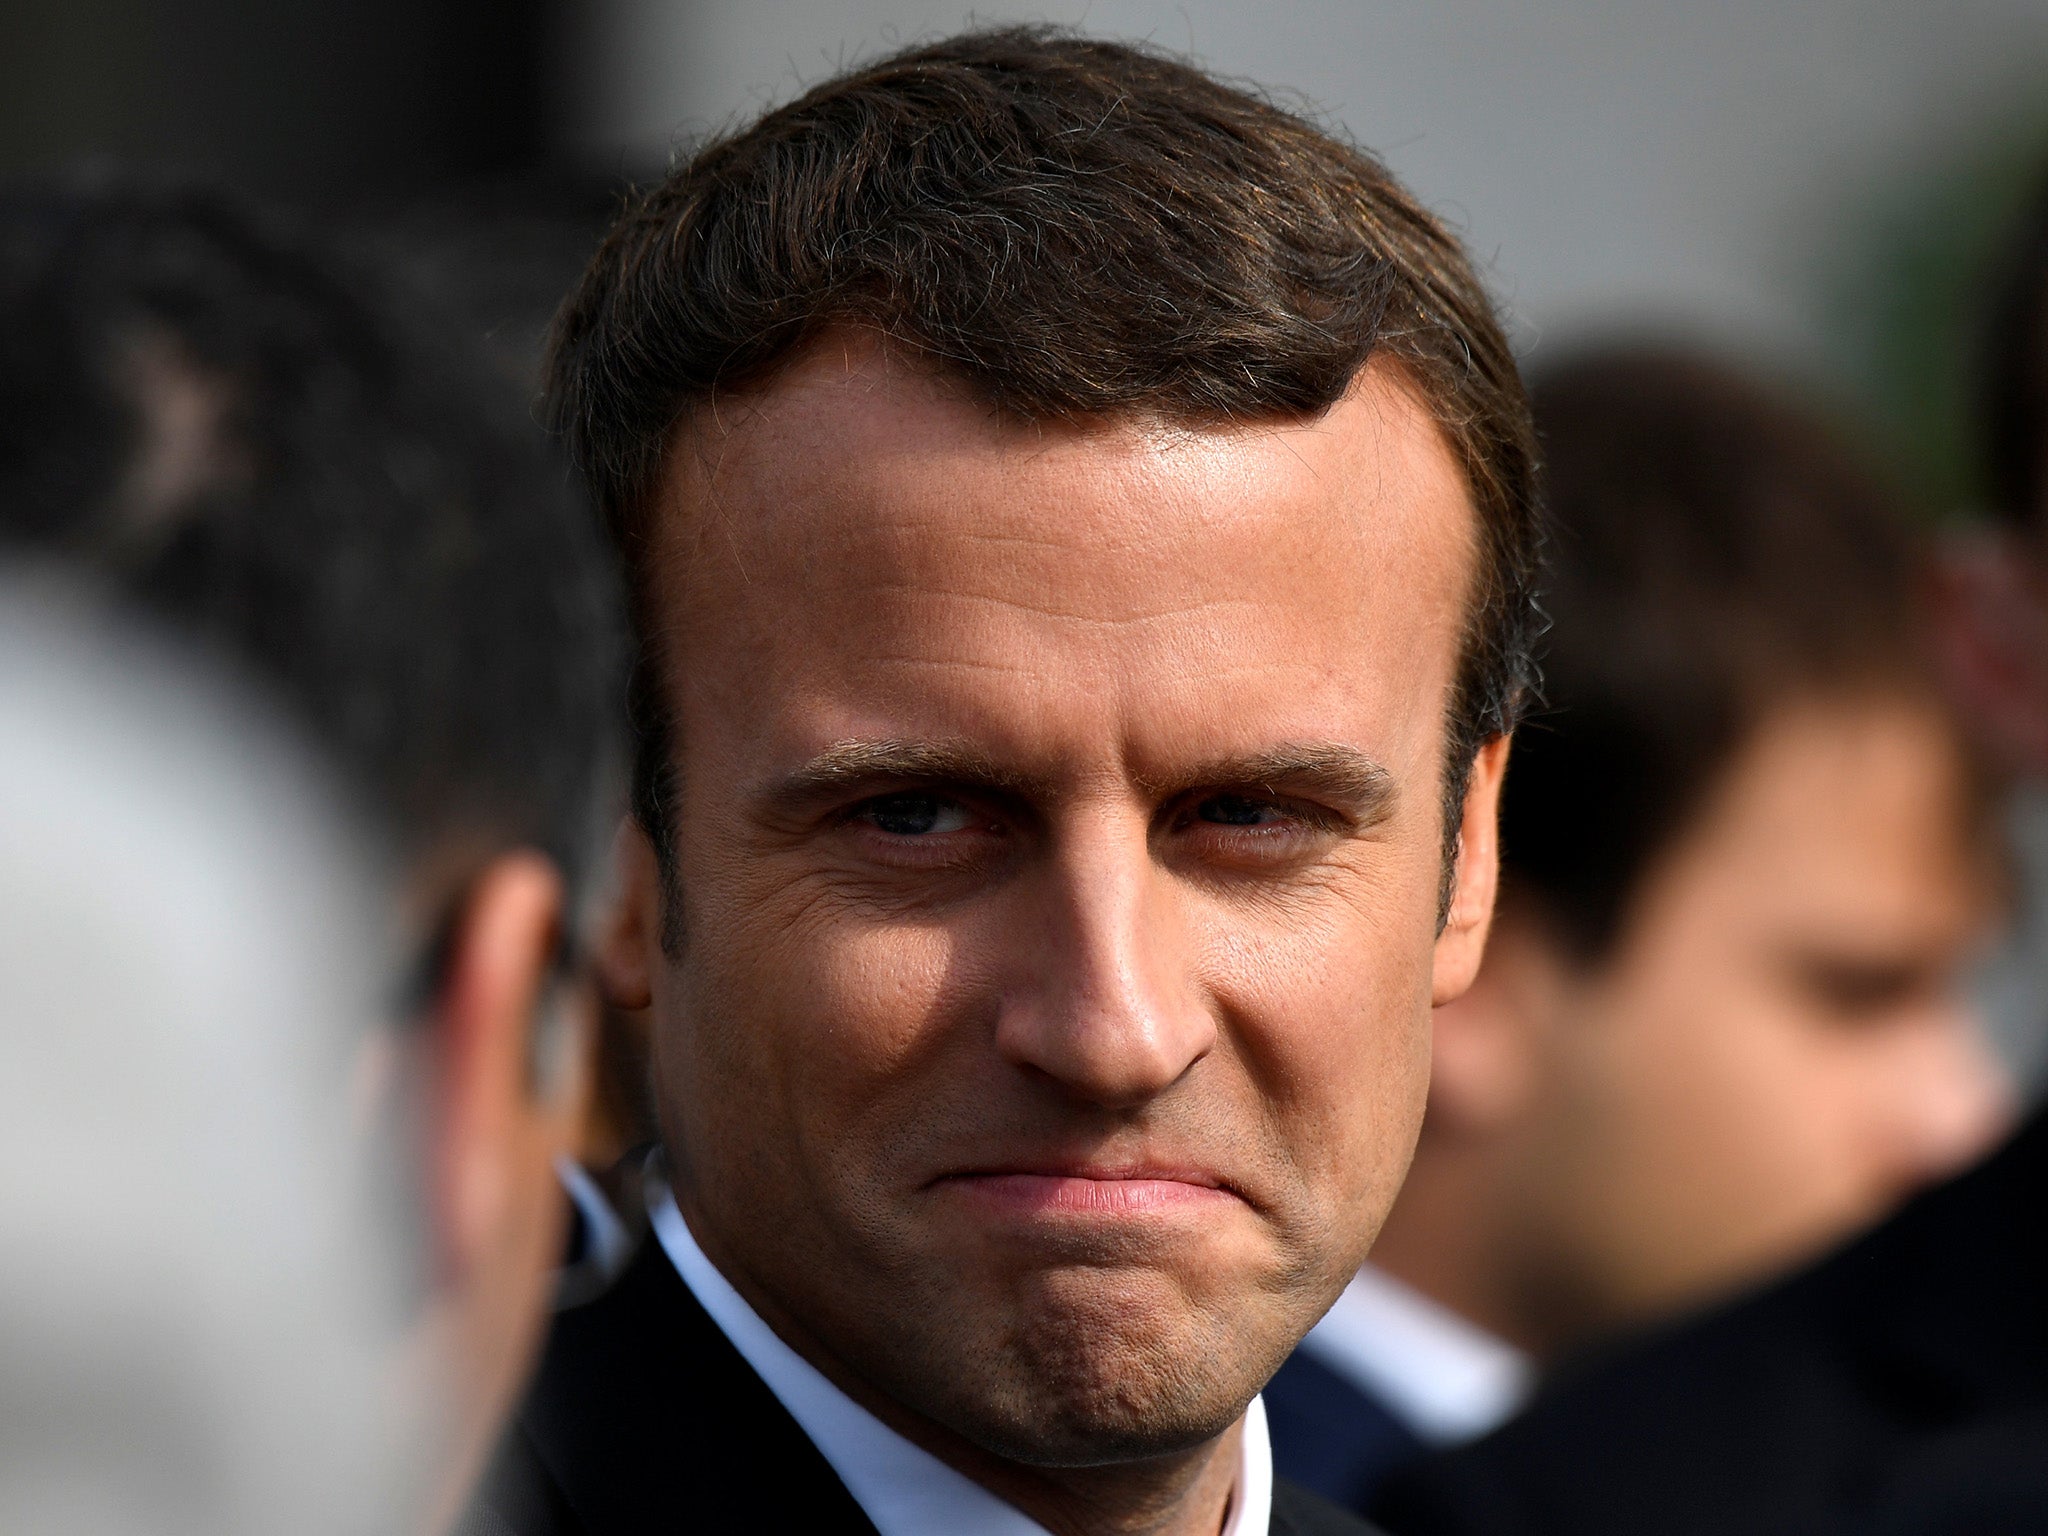 Emmanuel Macron's popularity has sunk